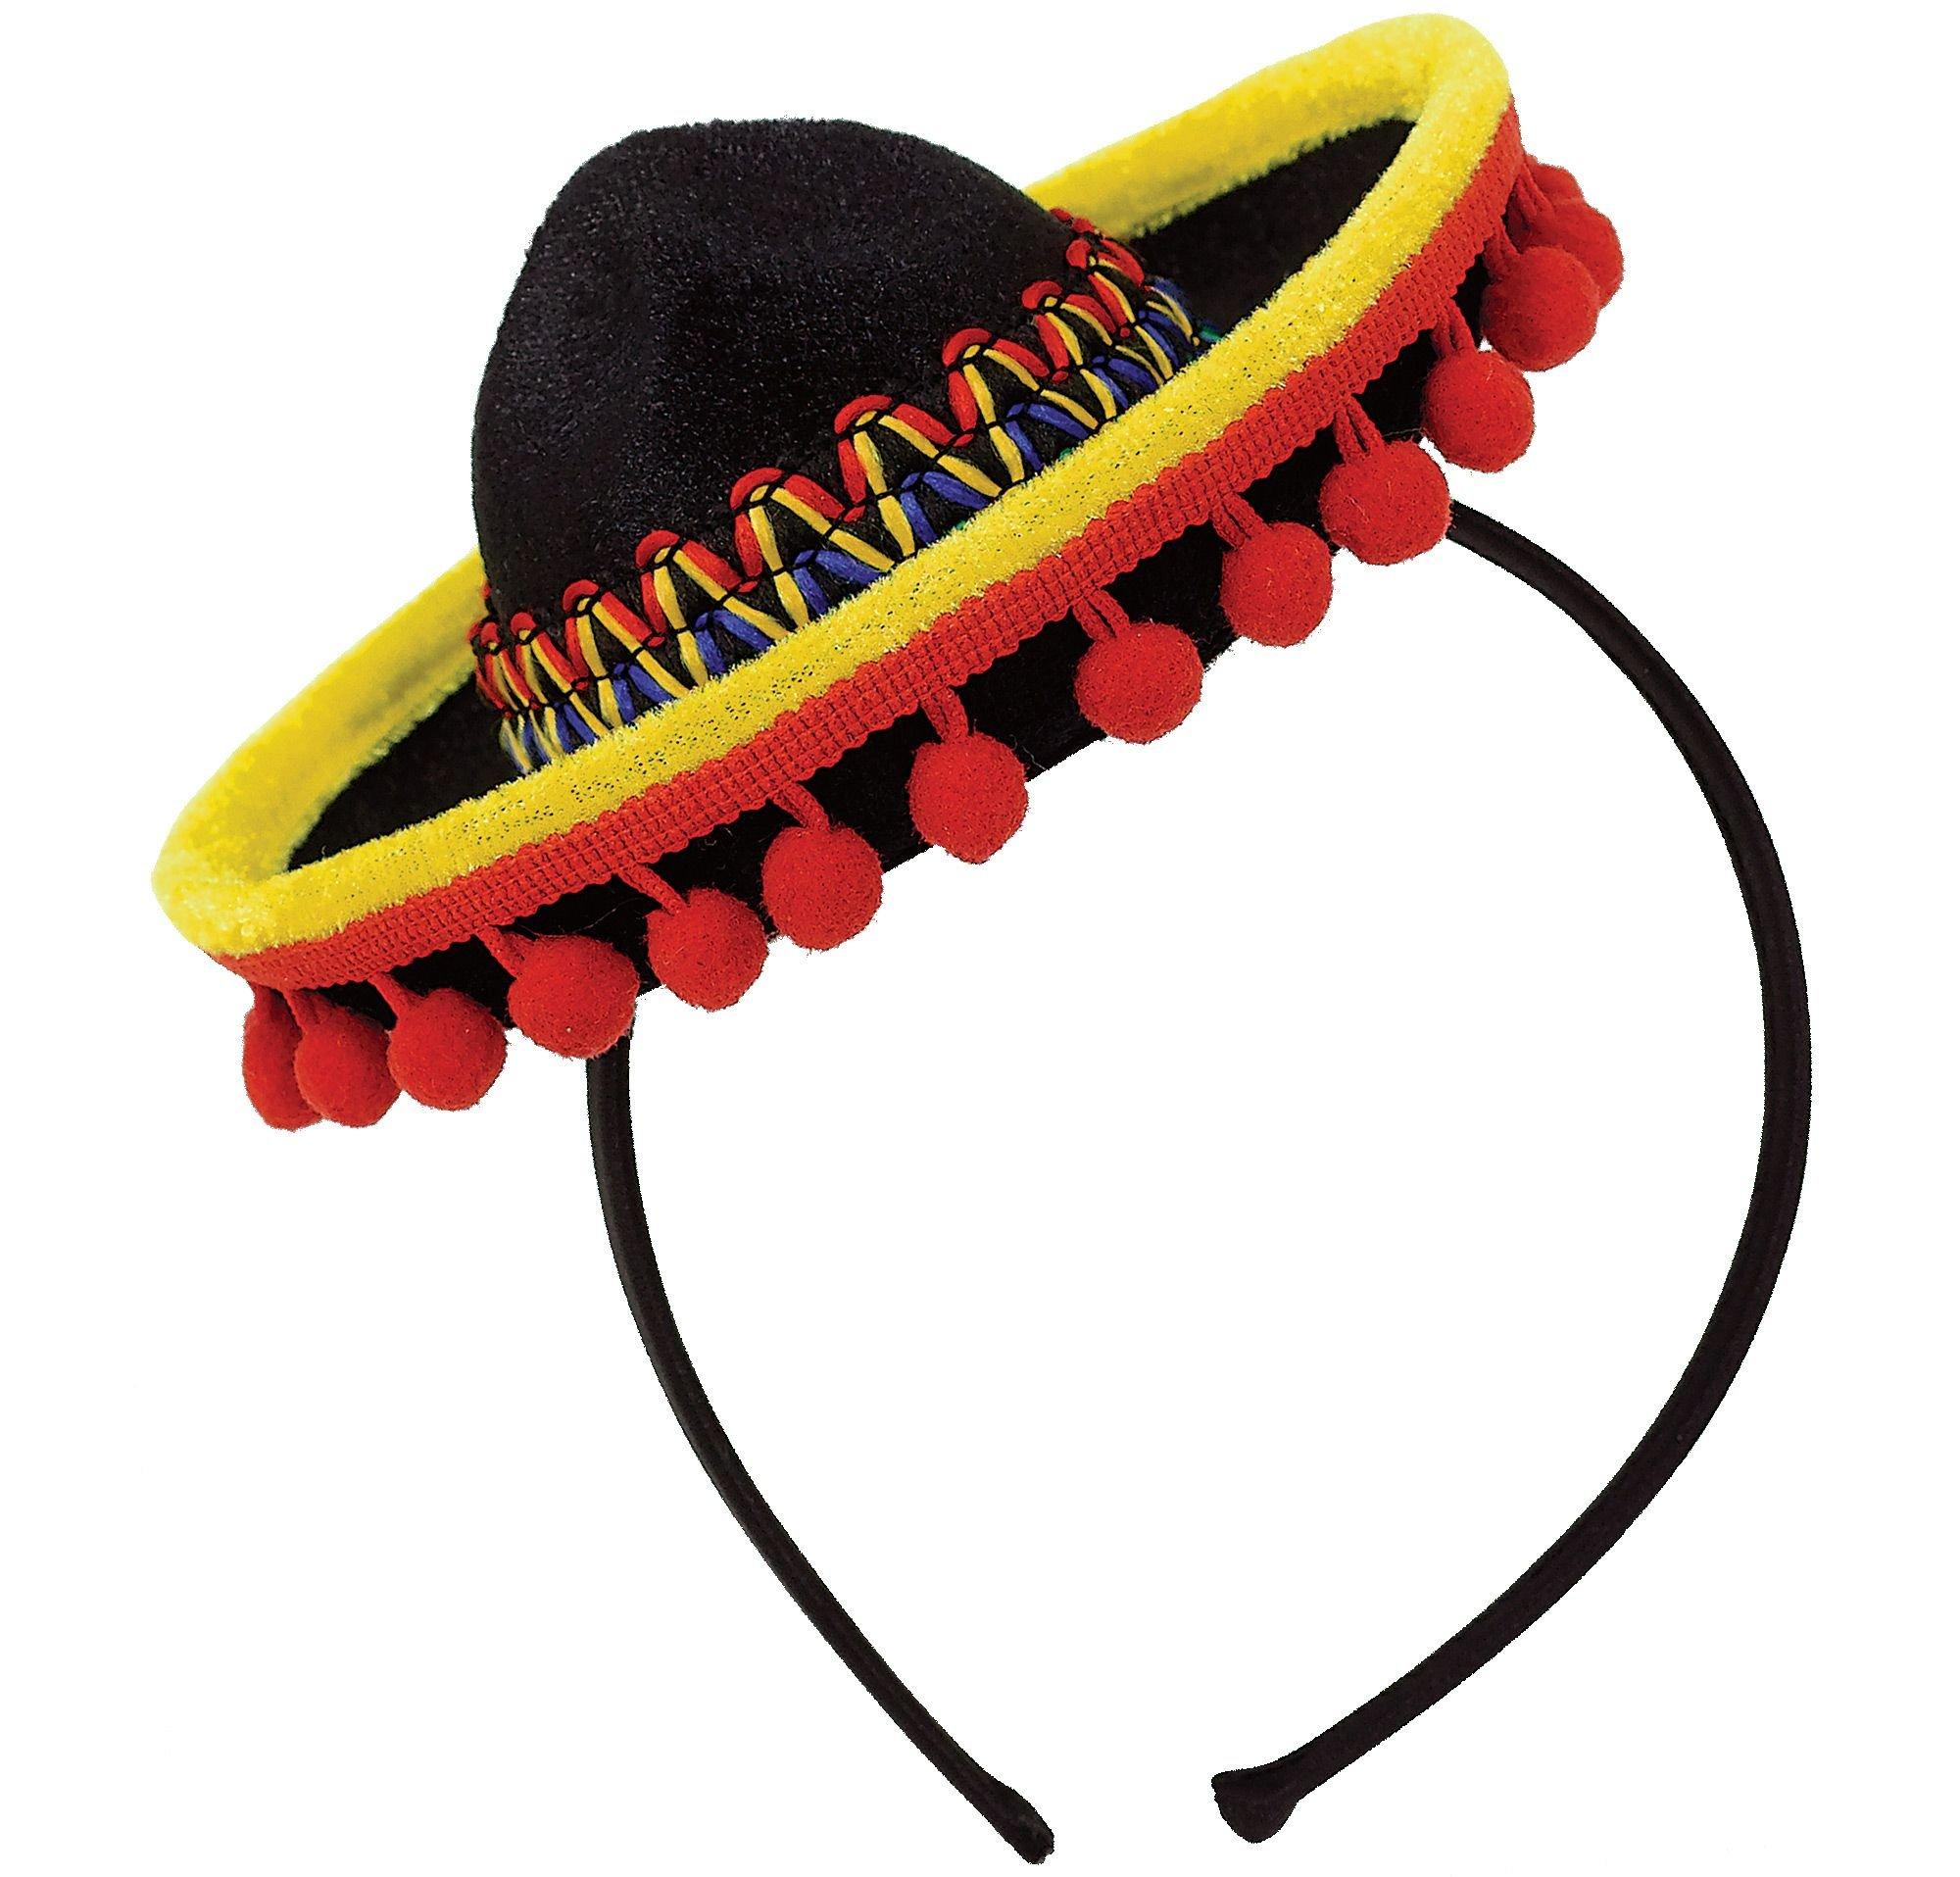 Mini Sombrero Headband with Ball Fringe